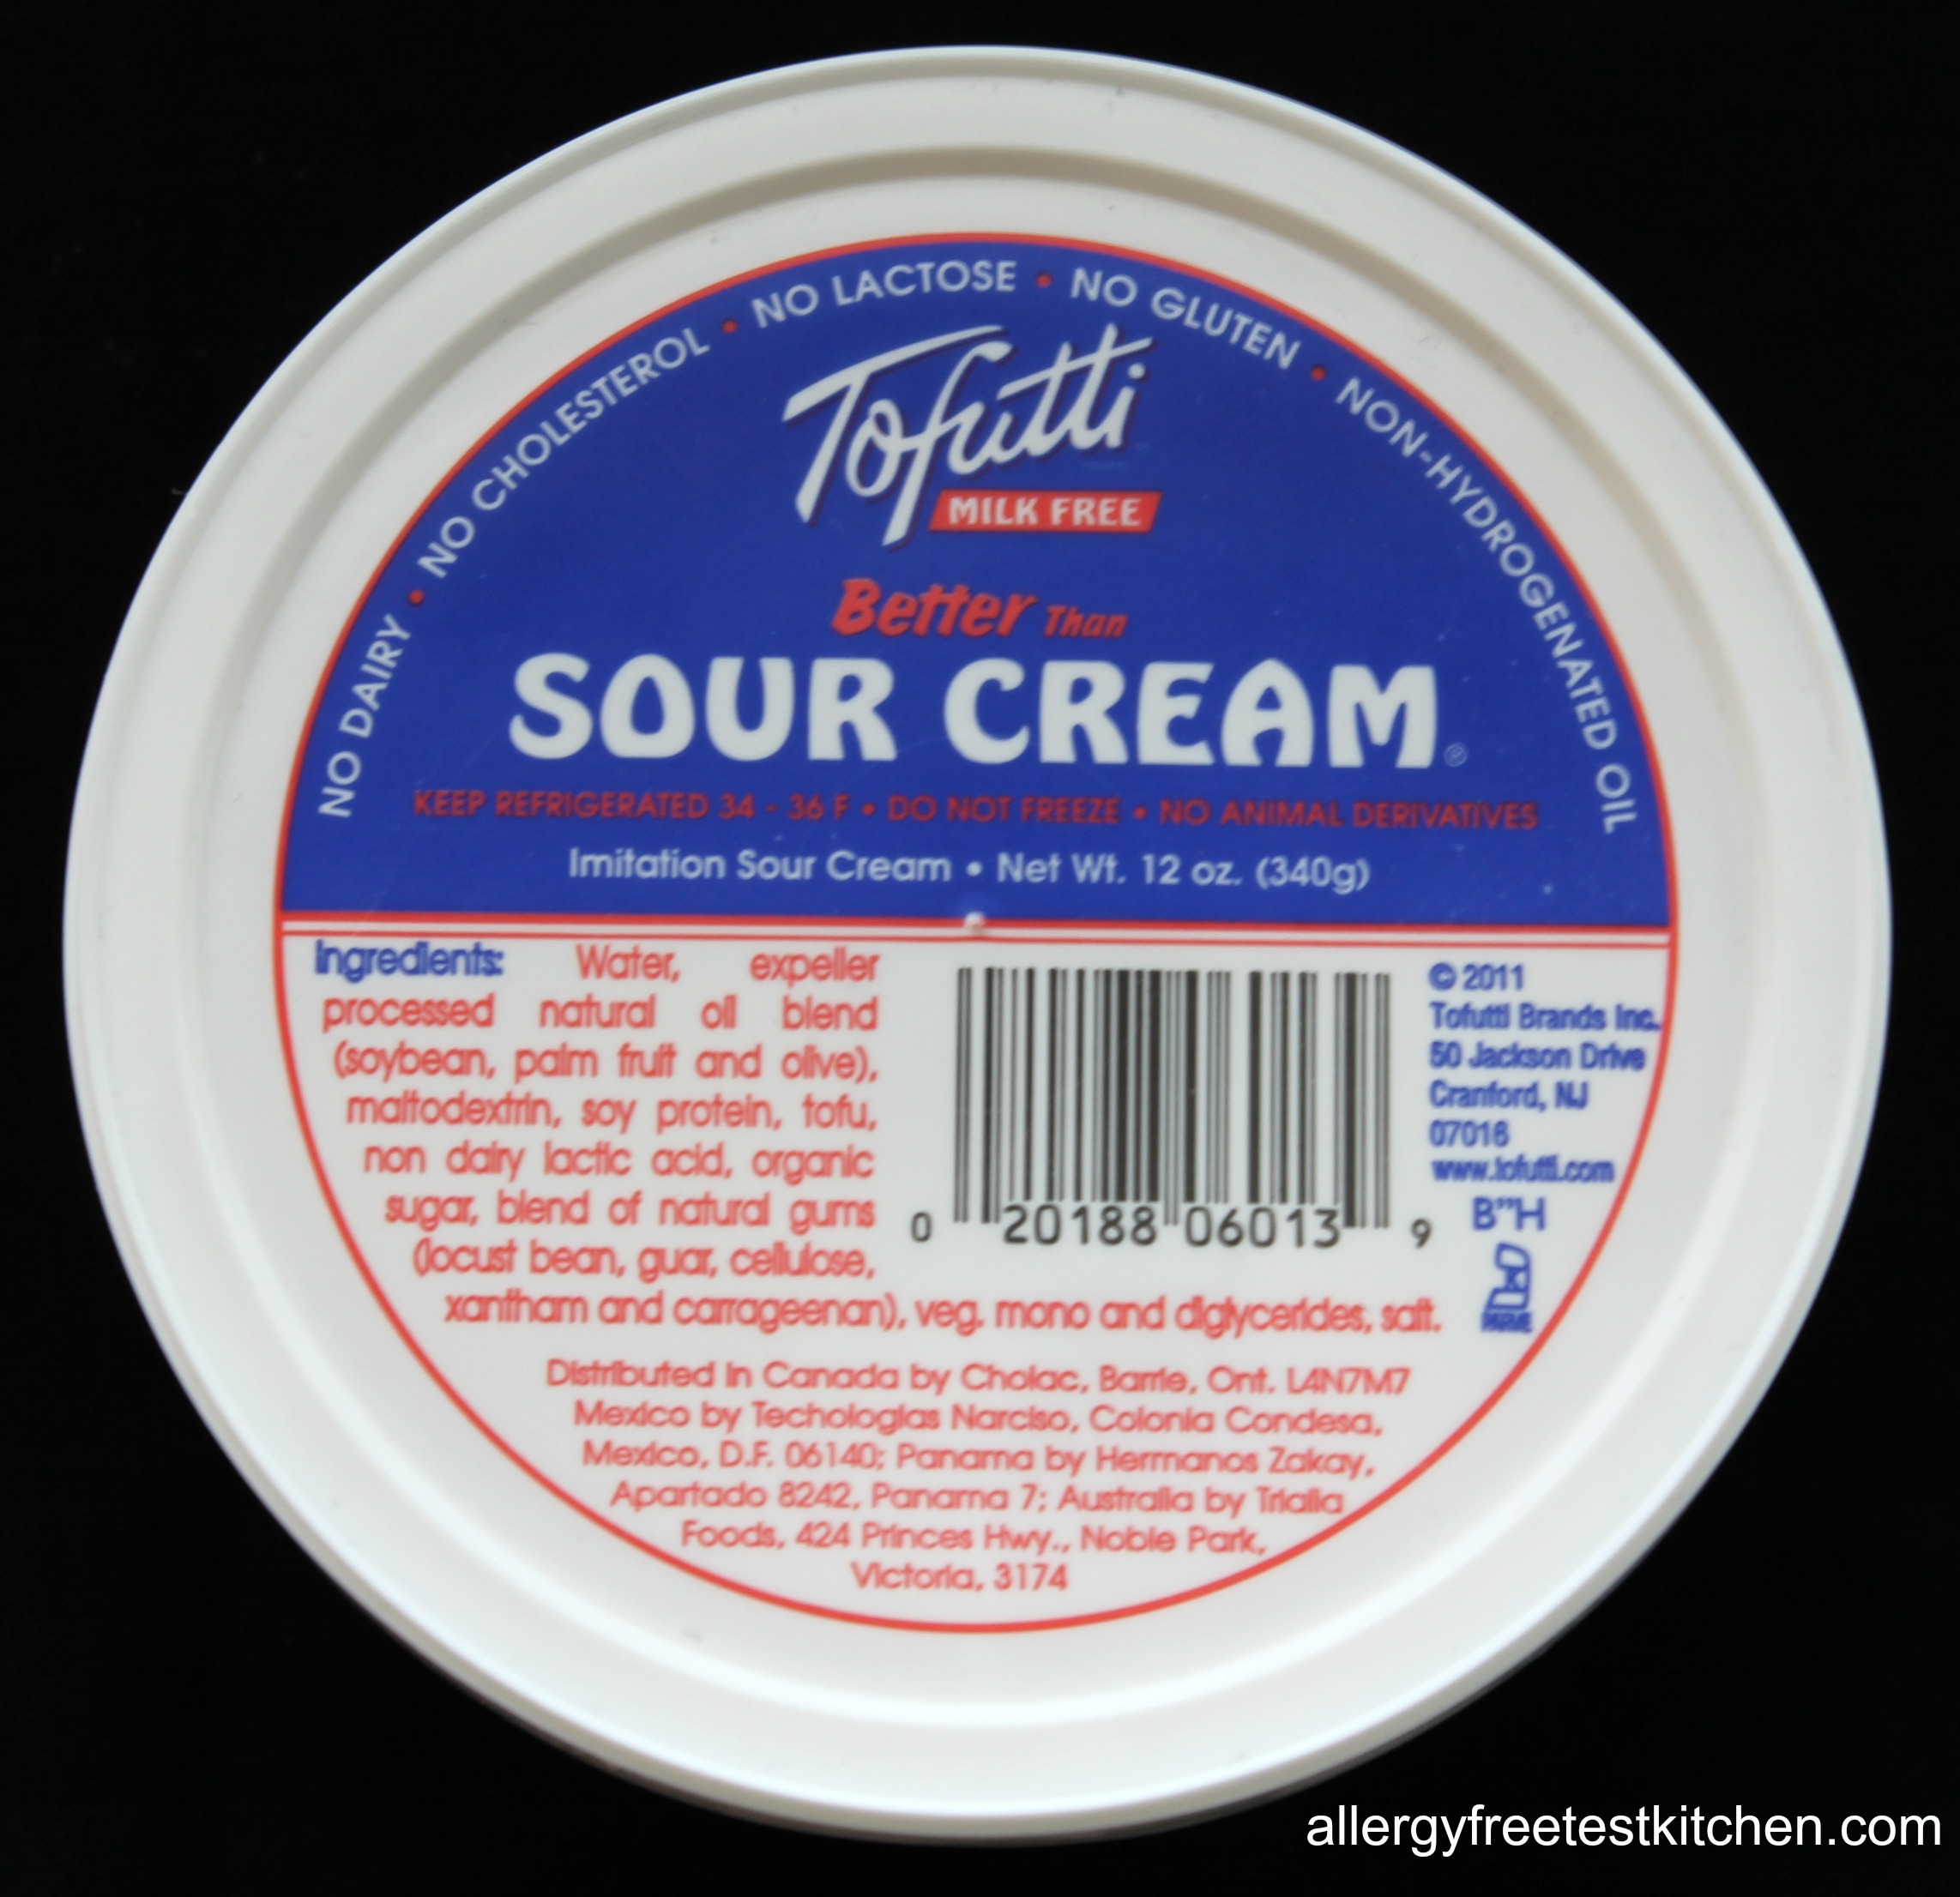 http://allergyfreetestkitchen.com/wp-content/uploads/2013/01/Blog-Sour-Cream1.jpg